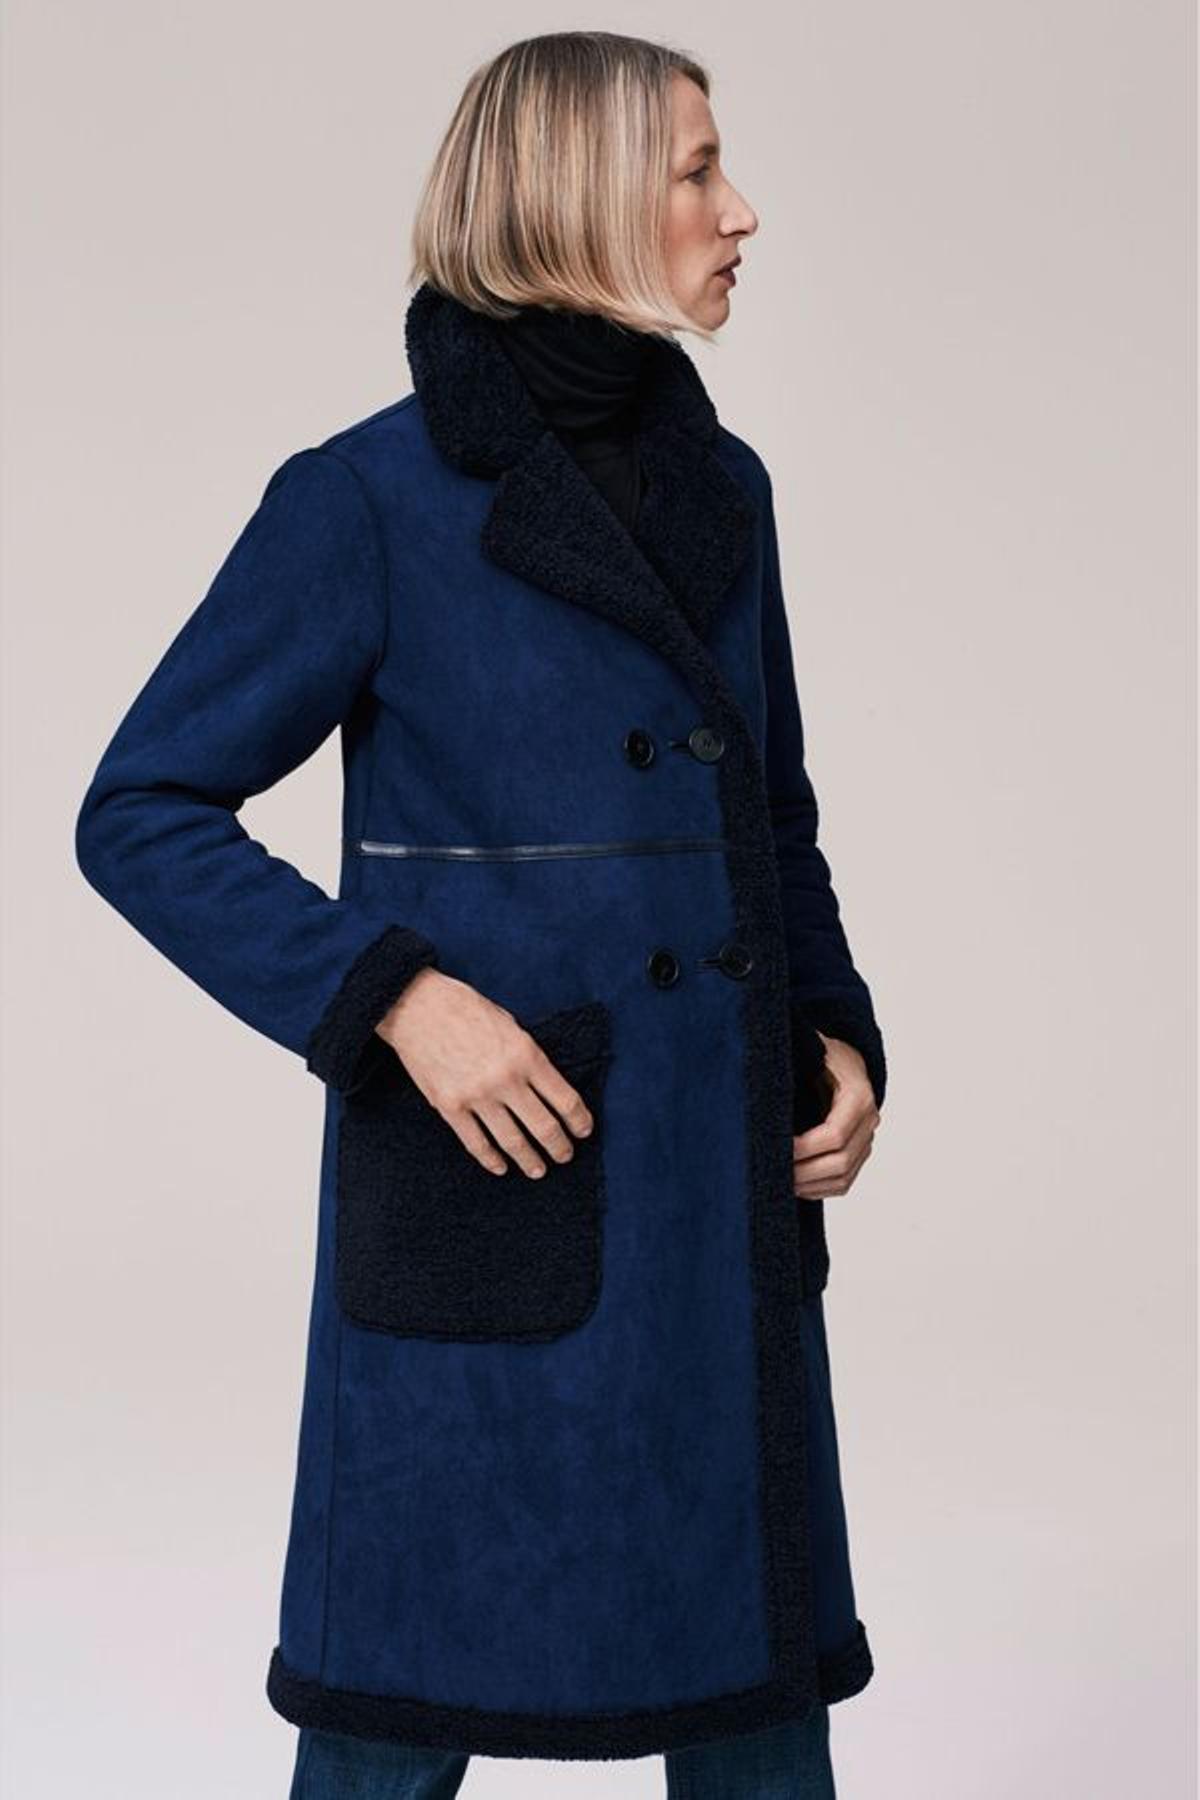 Campaña timeless de Zara: modelo con abrigo de doble faz